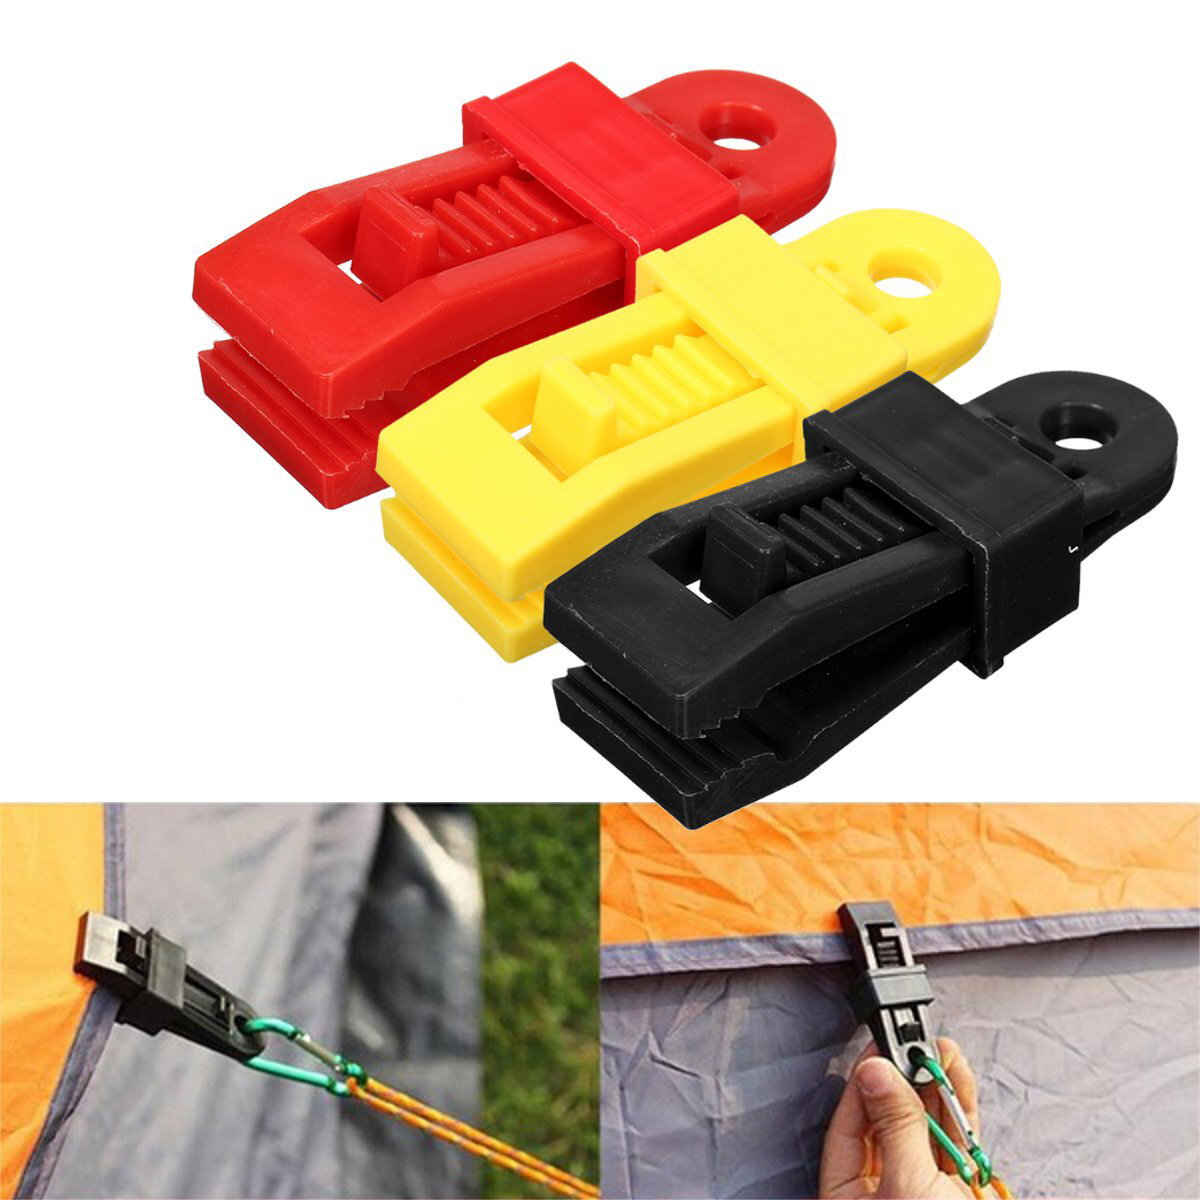 24 Wiederverwendbare Plastik-Zeltclips Zeltbügel Outdoor-Camping-Werkzeug - Gelb / Rot / Schwarz